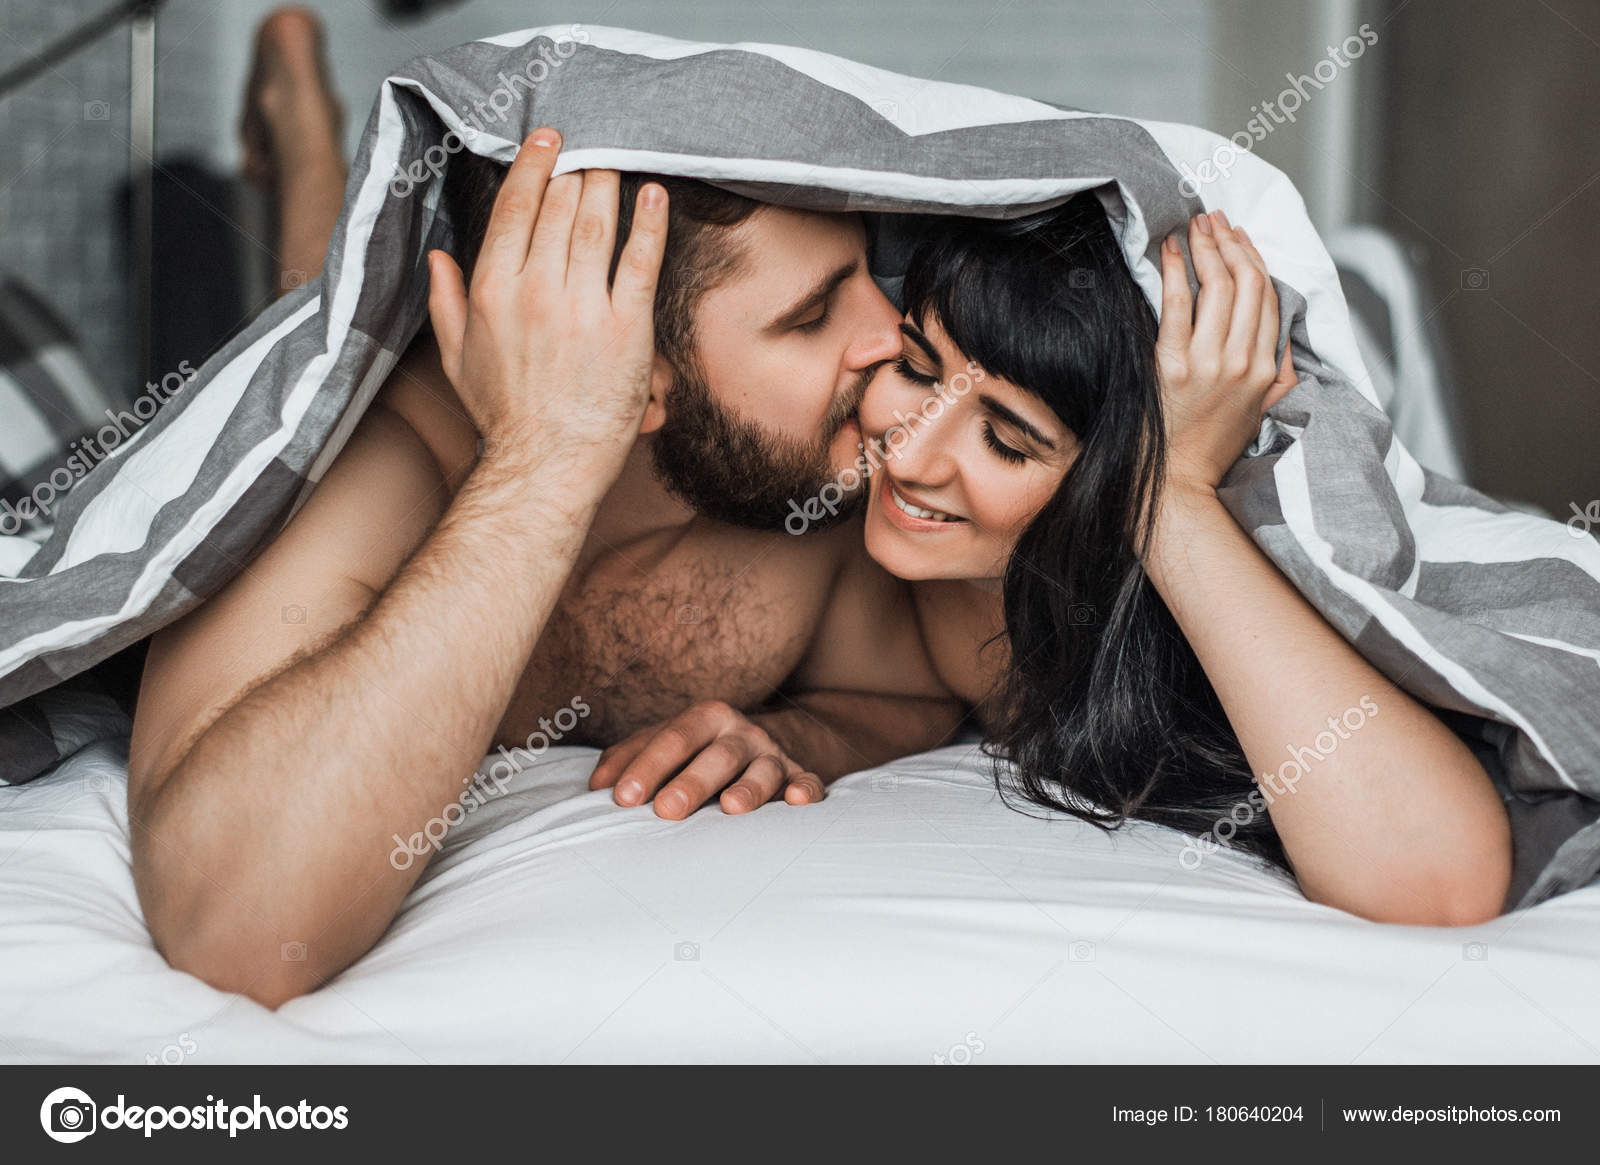 Girl kissing girl on bed